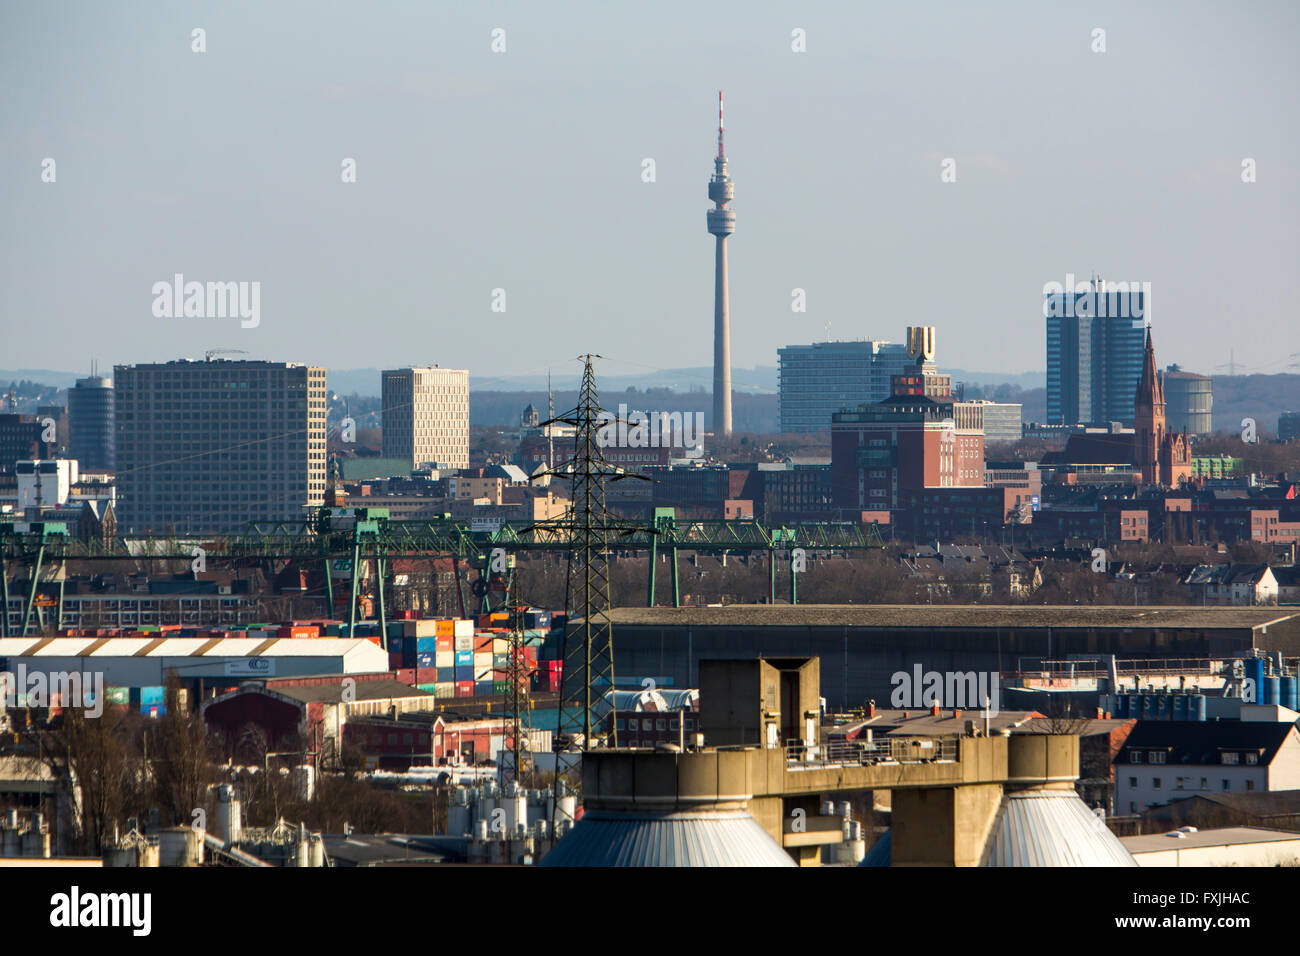 Panorama Ville de Dortmund, ville, tour de télévision Florian, Dortmunder U, tour de l'autoclave, d'épuration de la rivière Emscher Deusen, Banque D'Images